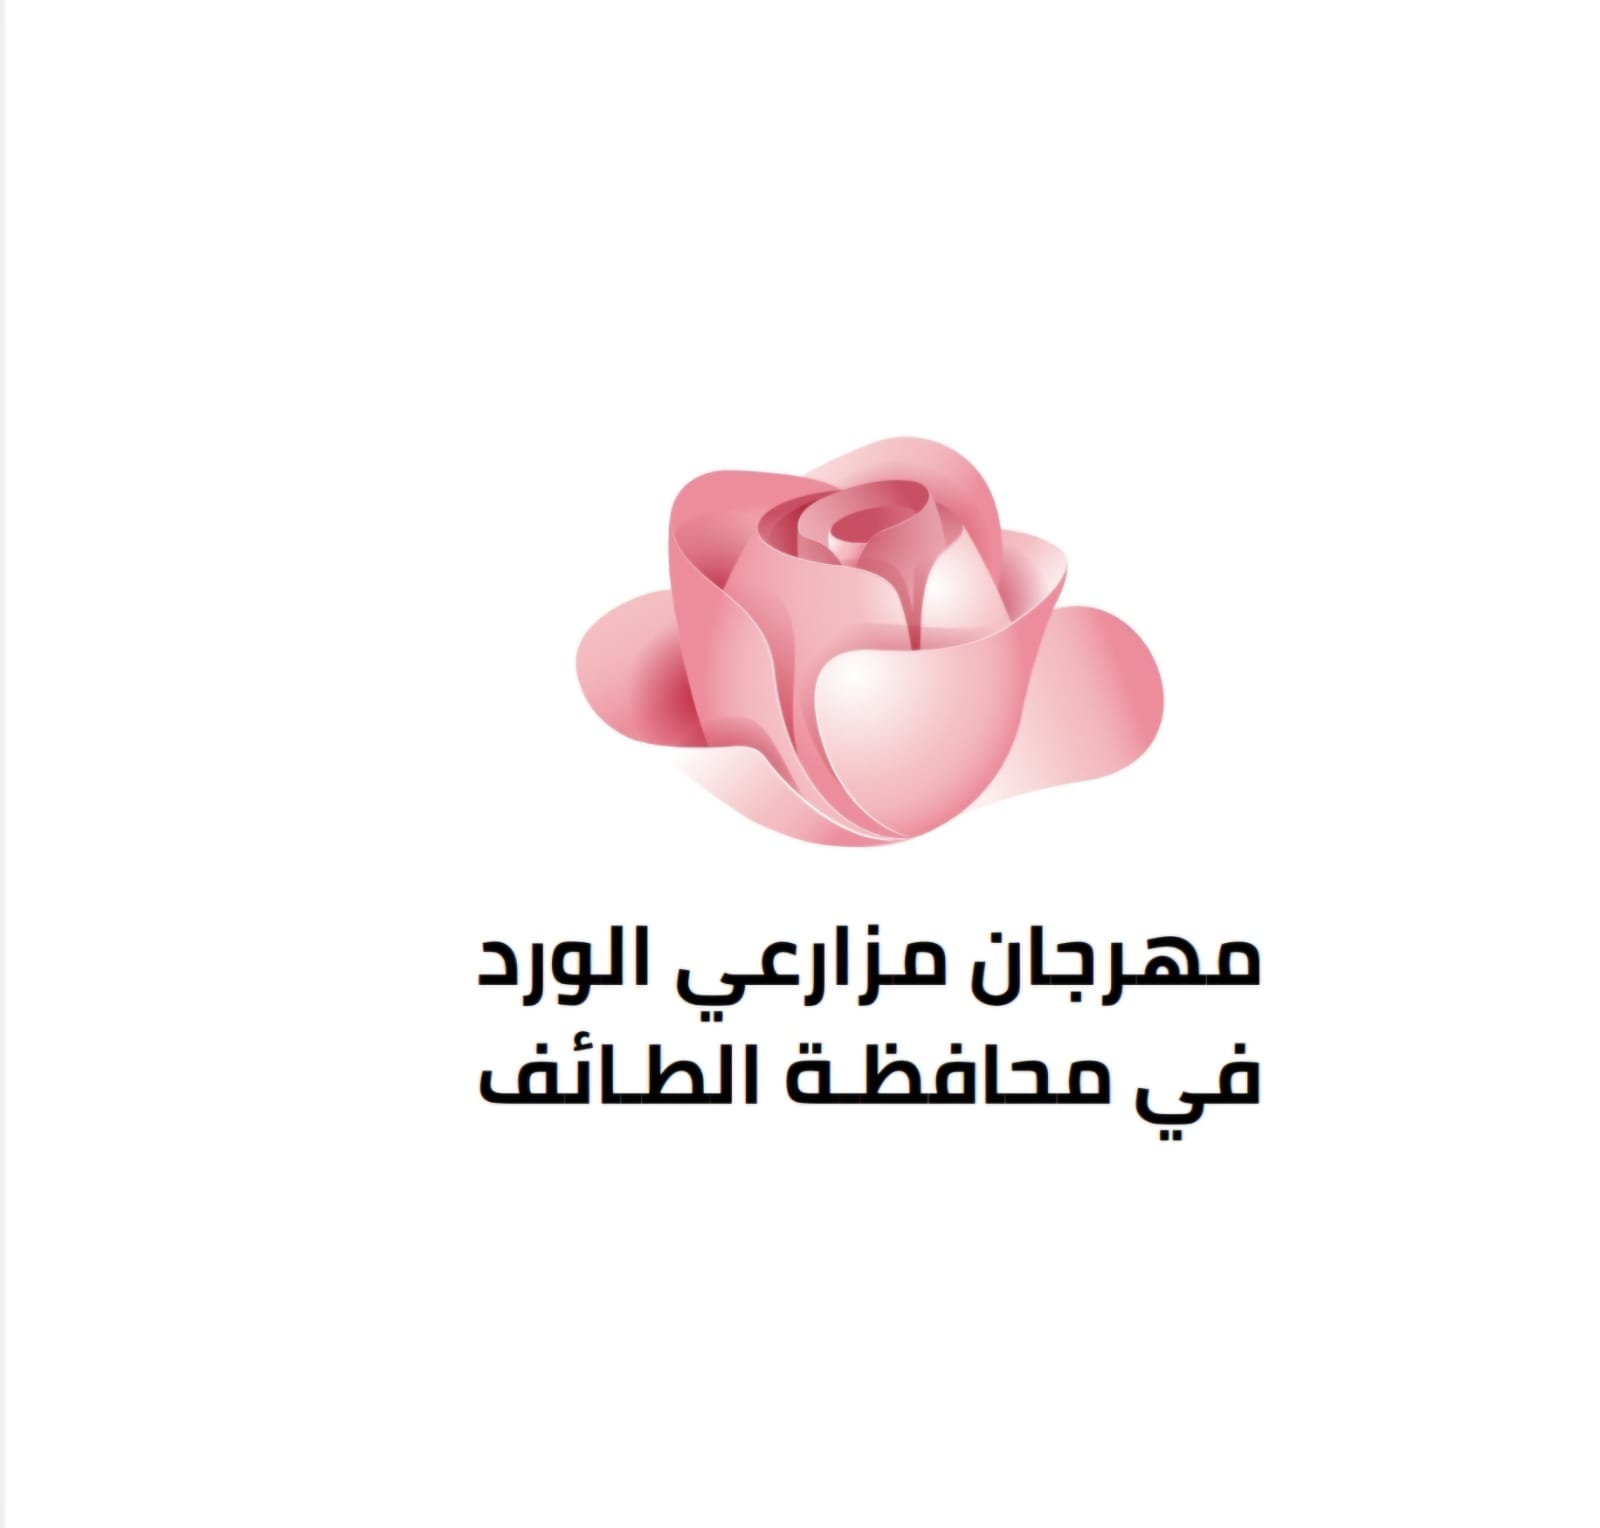 الأمير سعود بن نهار يرعى مهرجان مزارعي الورد الطائفي .. الاربعاء المقبل.